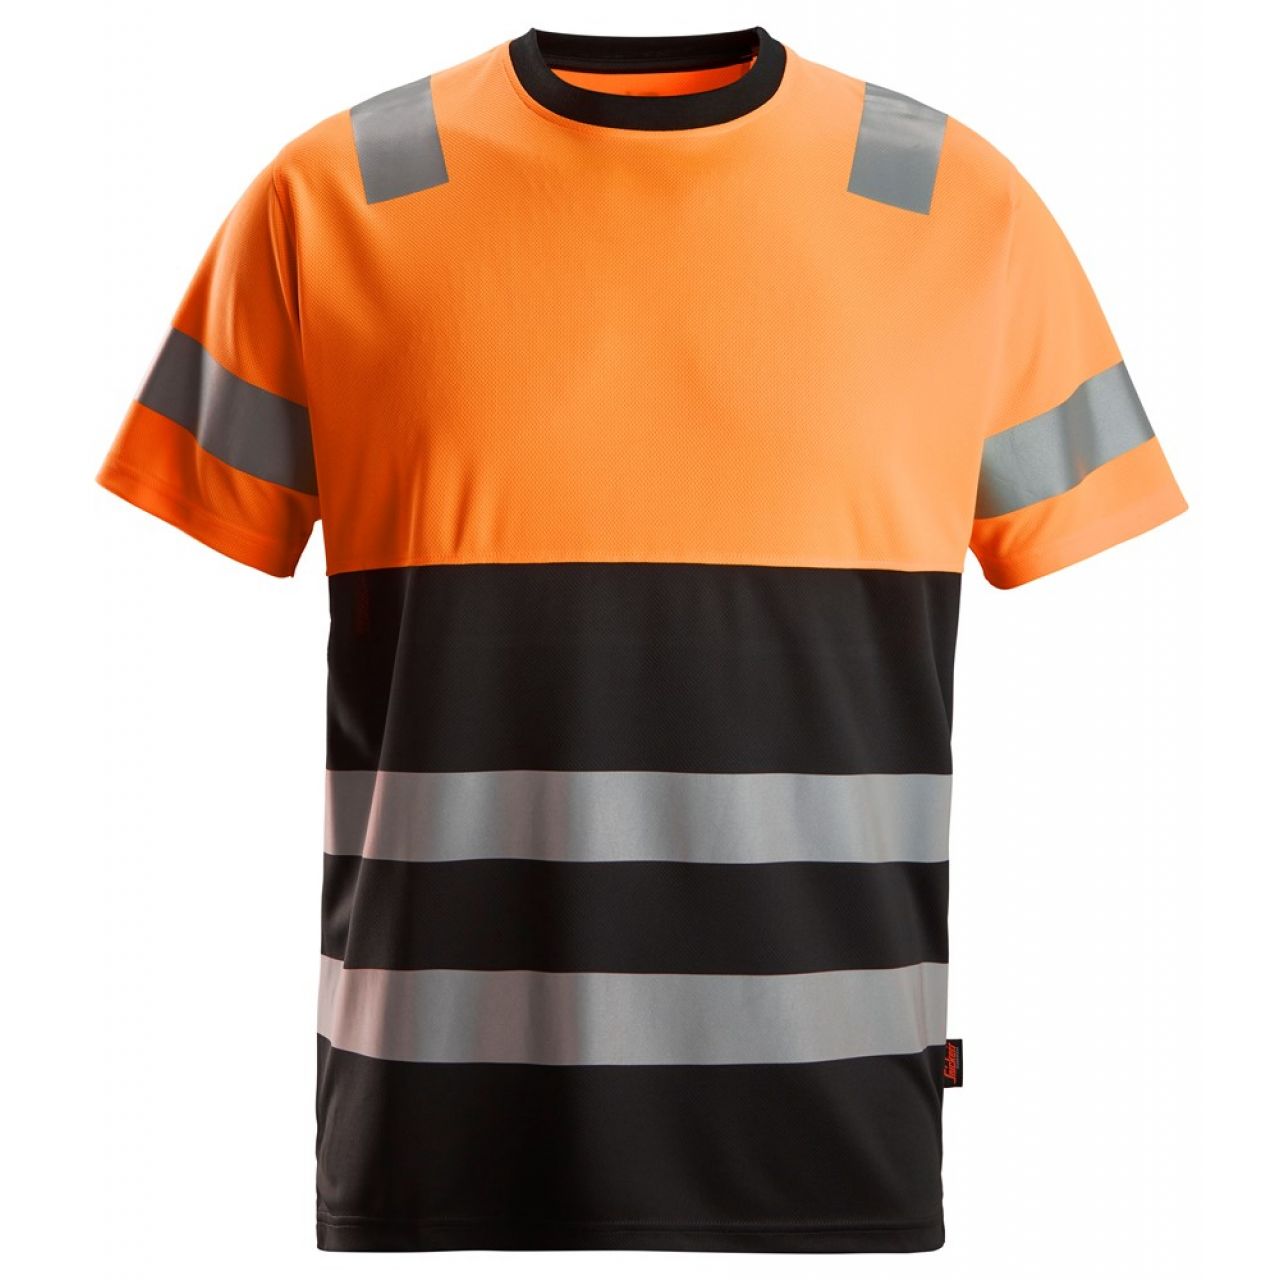 2535 Camiseta de manga corta de alta visibilidad clase 1 negro-naranja talla L